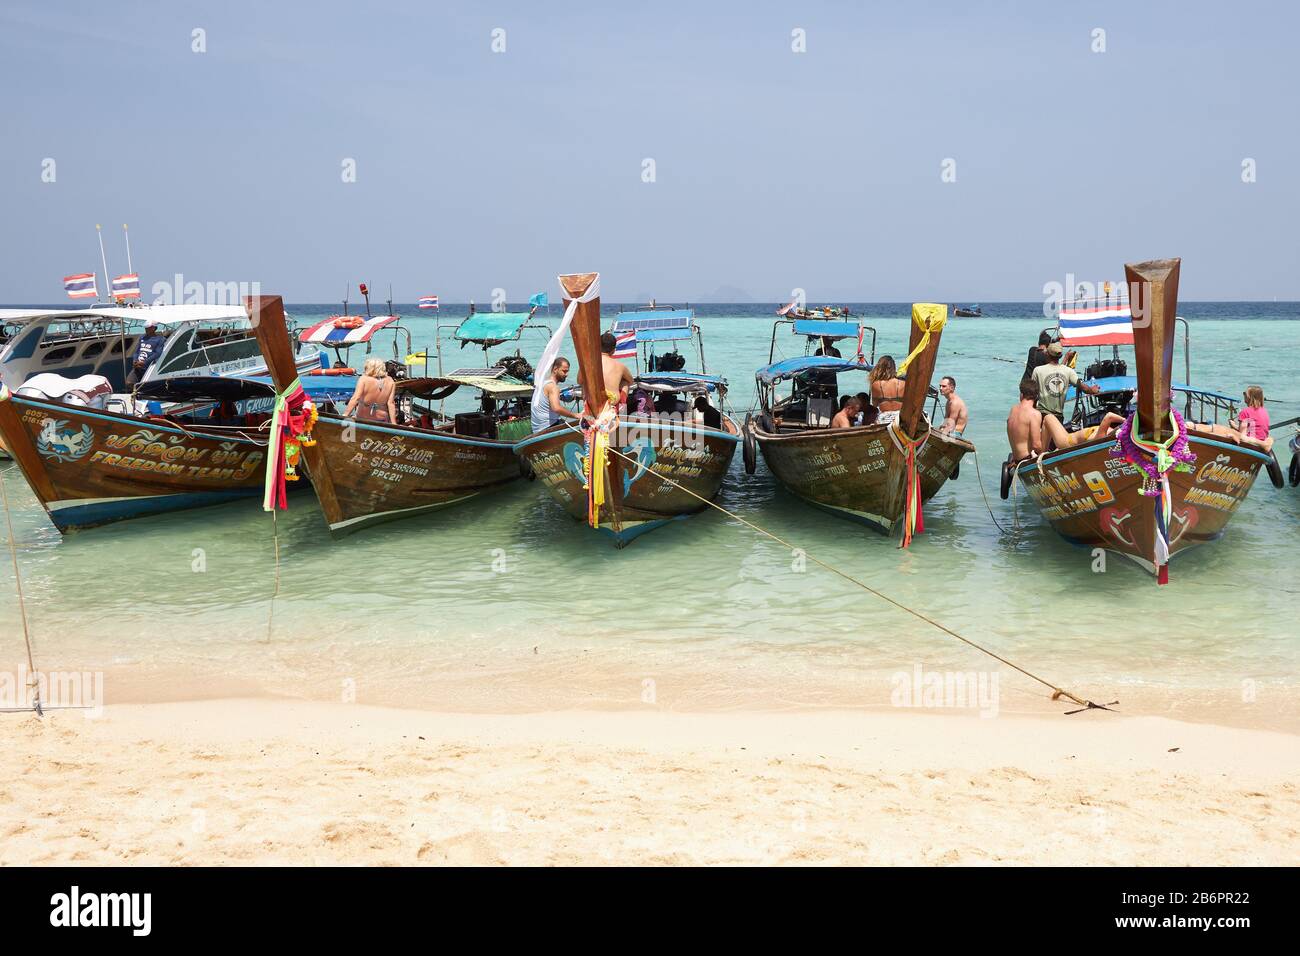 Phuket, Thaïlande, 04 février 2020: Plusieurs bateaux thaïlandais traditionnels avec des touristes se tiennent à la suite sur une magnifique plage sur une île près de Phuket Banque D'Images